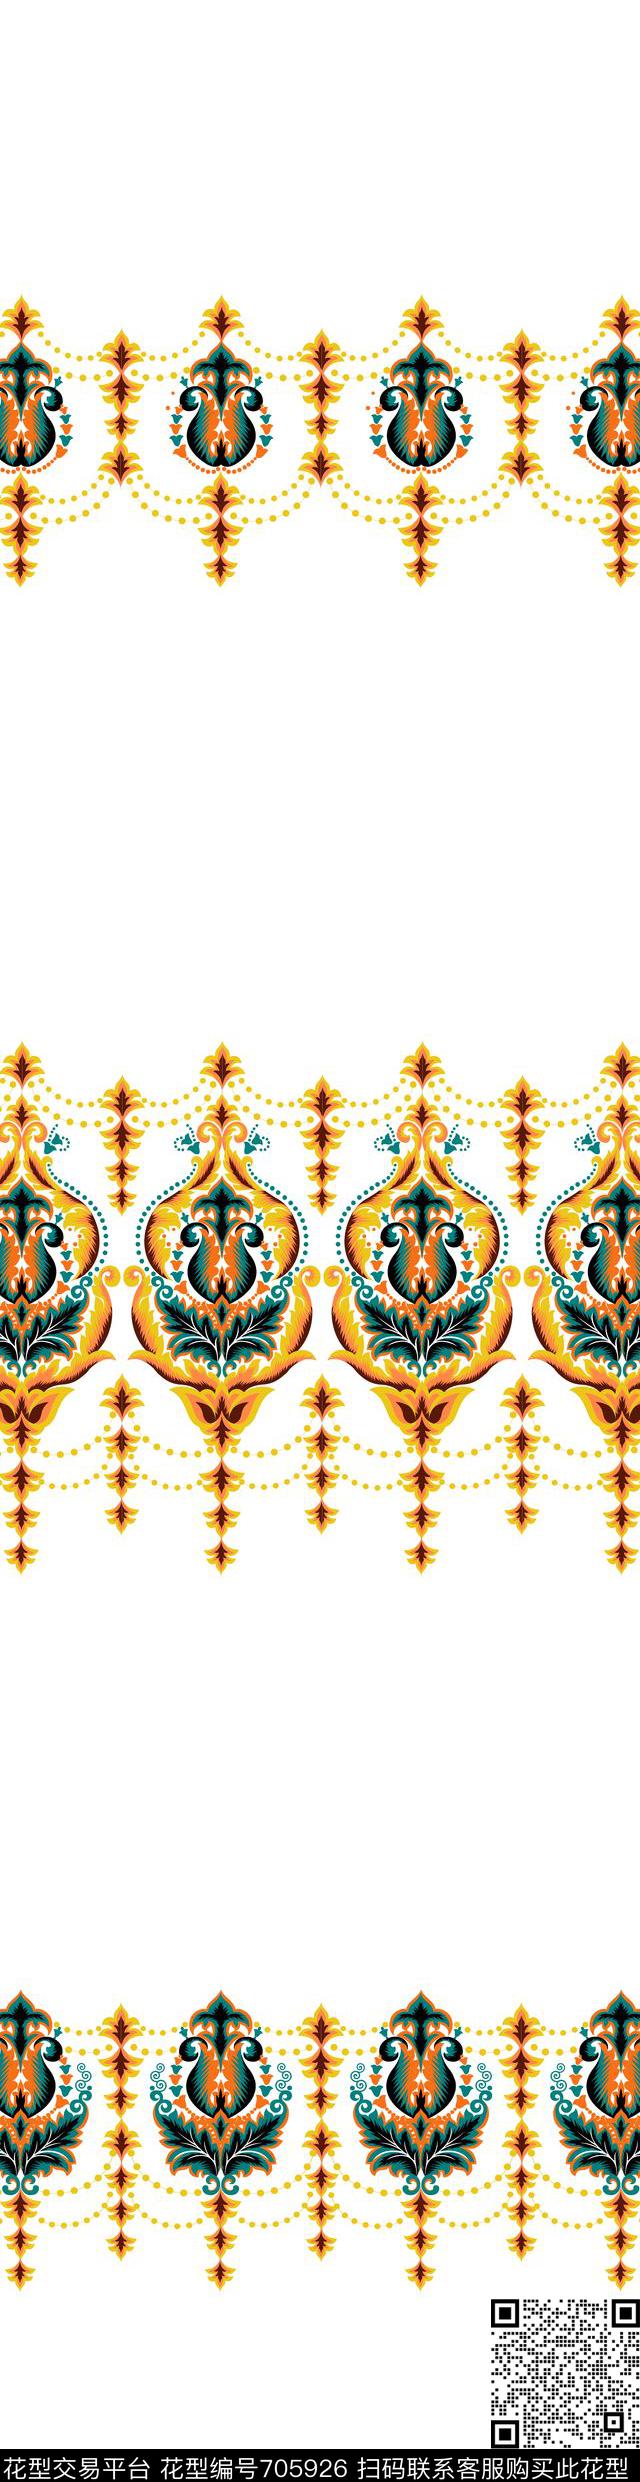 031.jpg - 705926 - 欧式 法式 美式 - 传统印花花型 － 窗帘花型设计 － 瓦栏